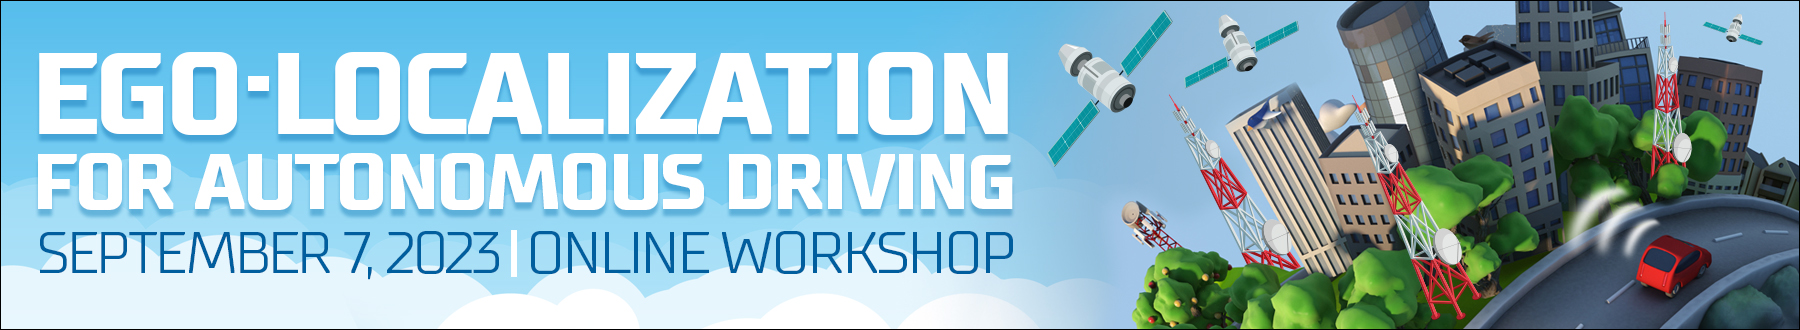 Ego-Localization for Autonomous Driving Workshop 2023